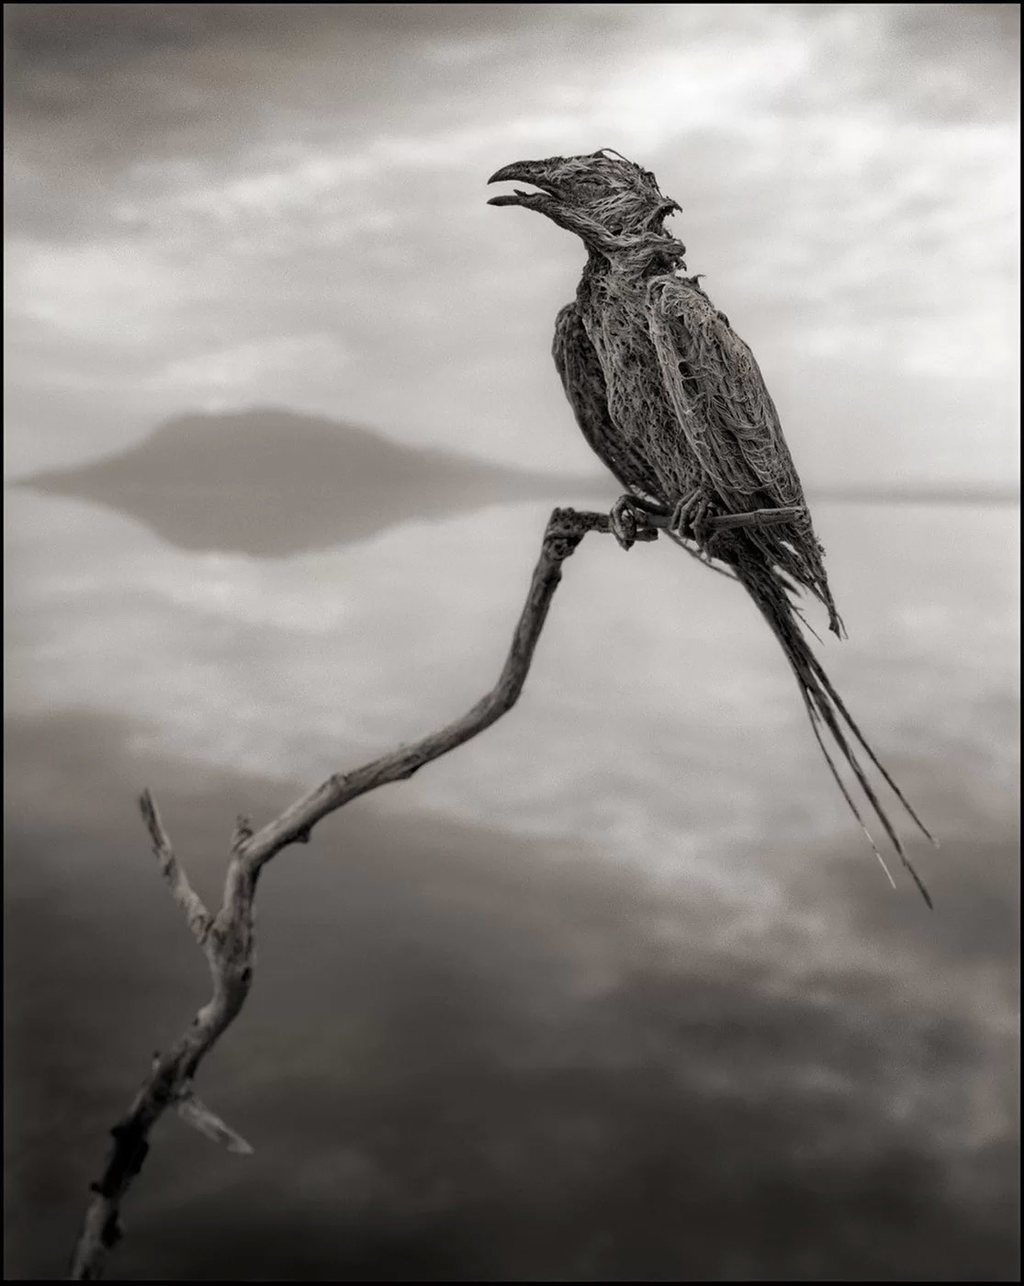 طائر نافق في بحيرة ناترون